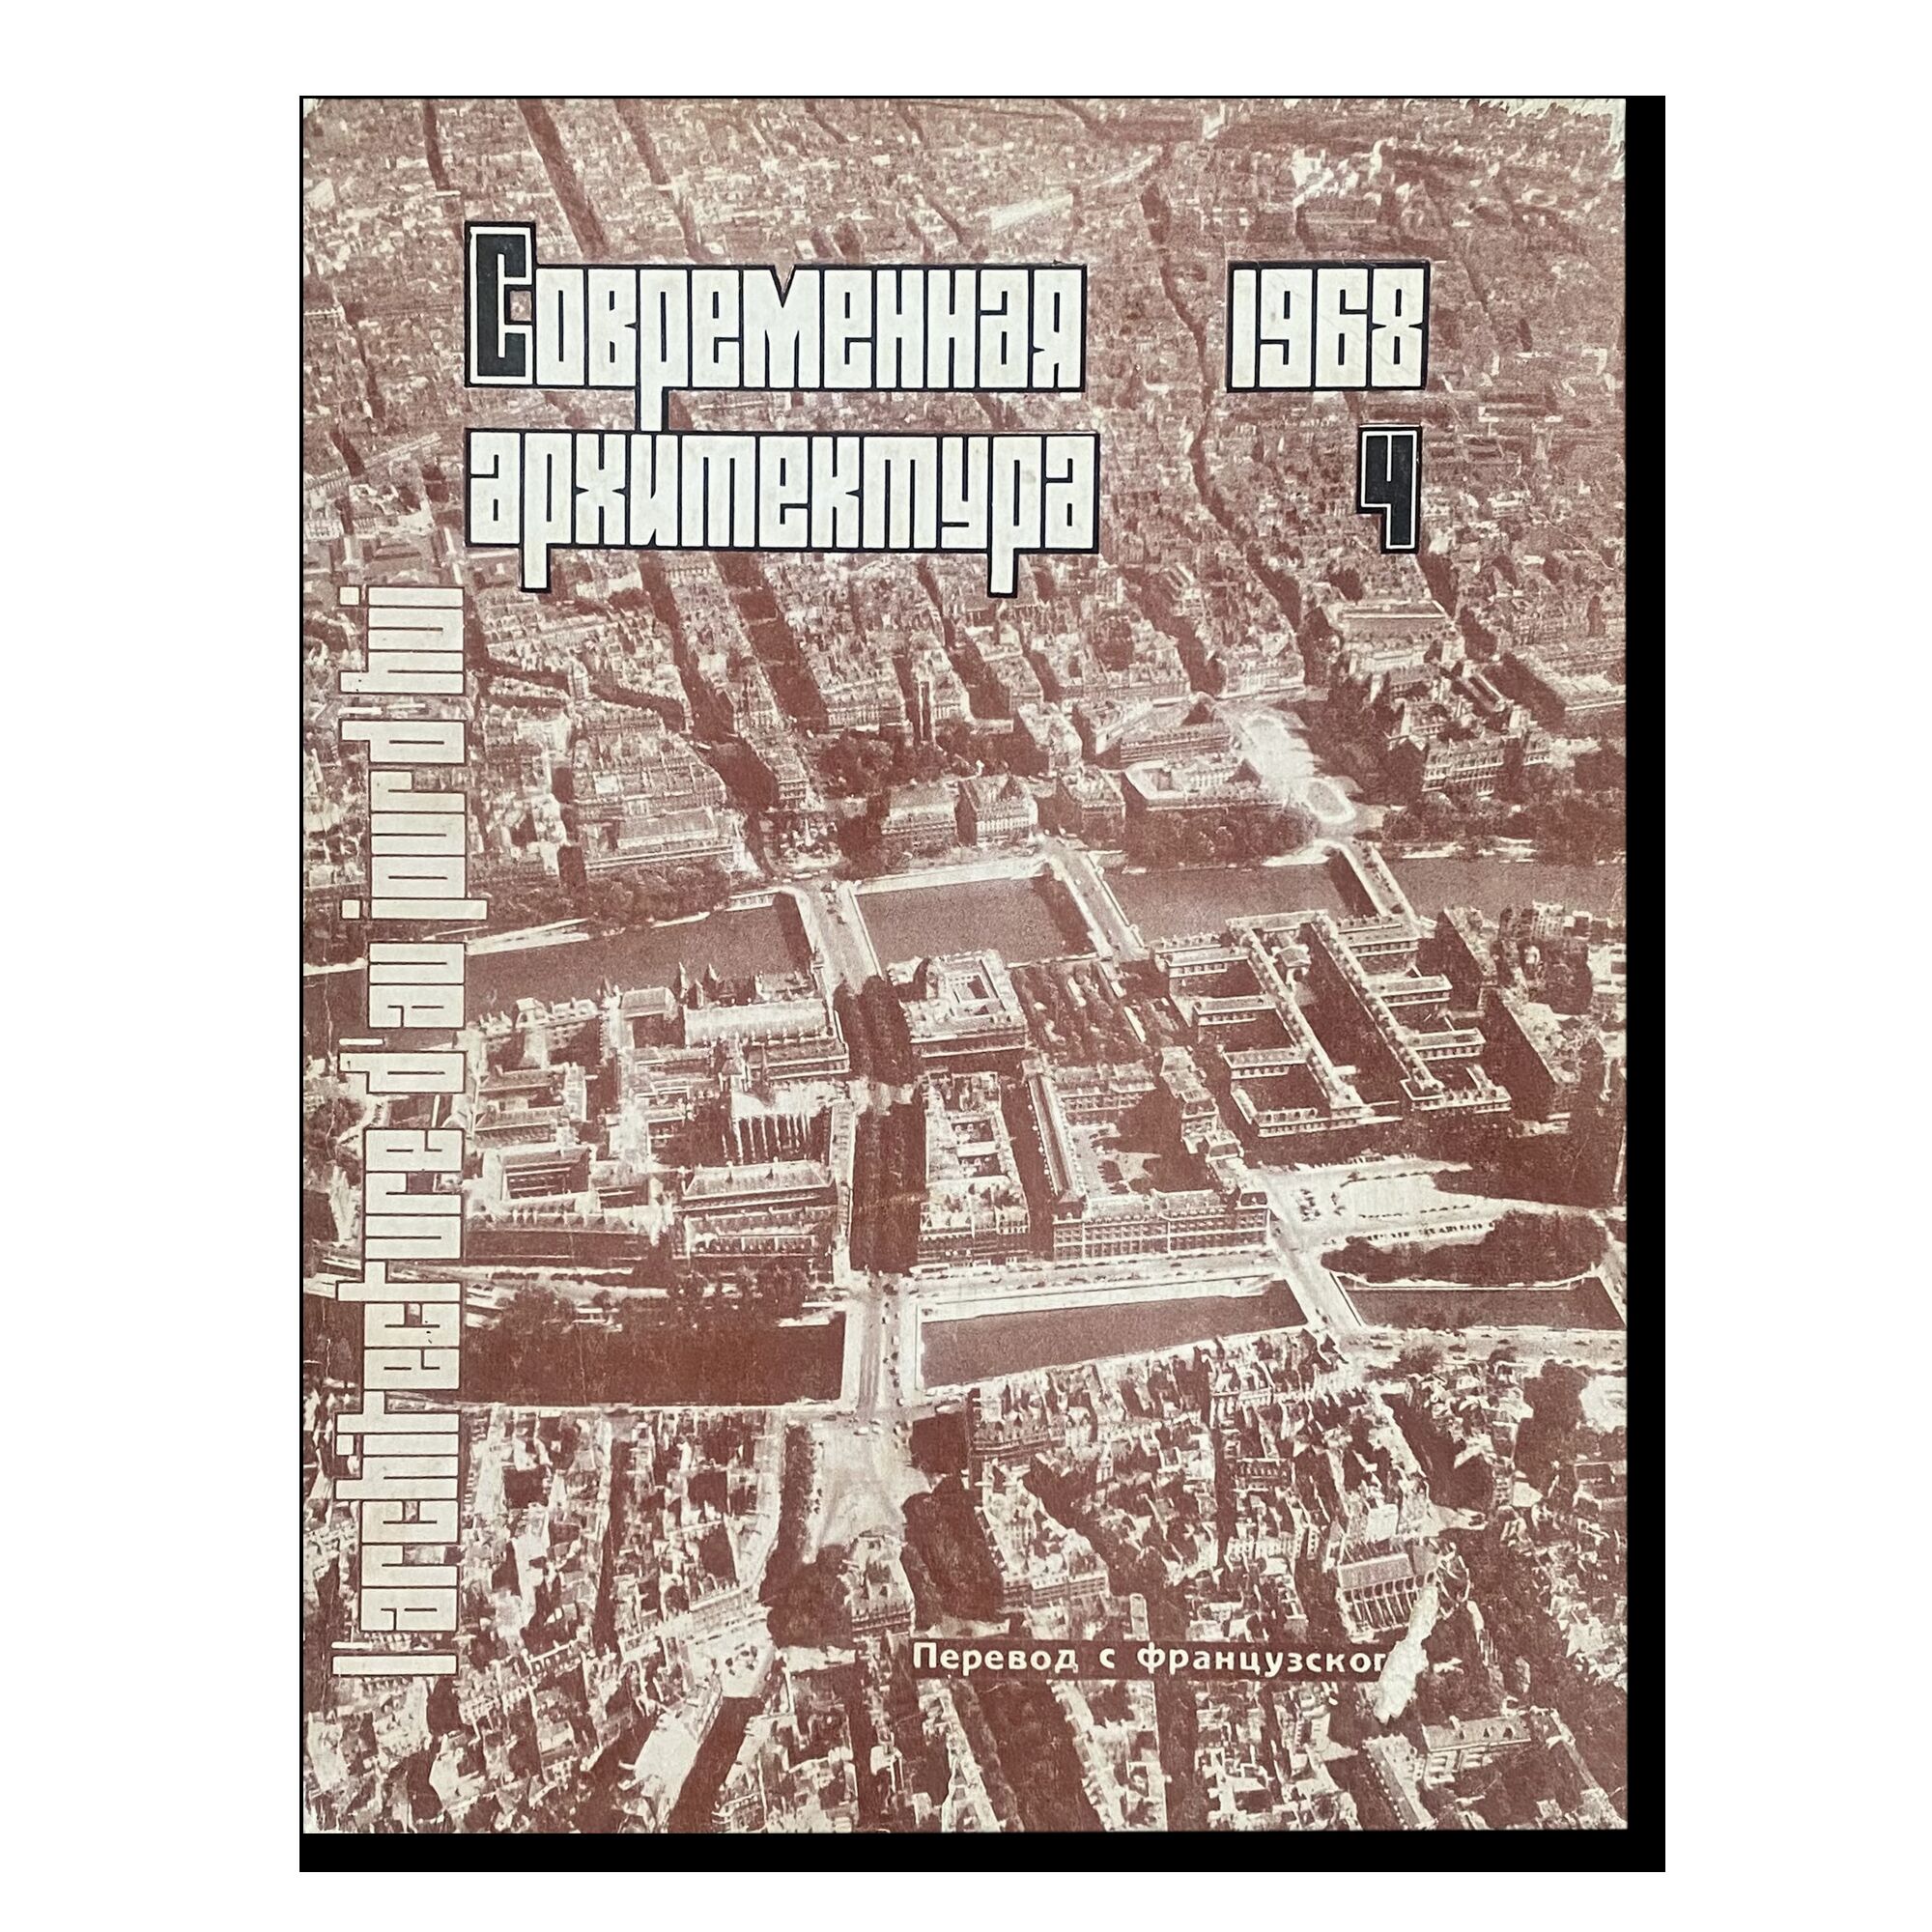 Журнал "Современная архитектура" (4) 1968